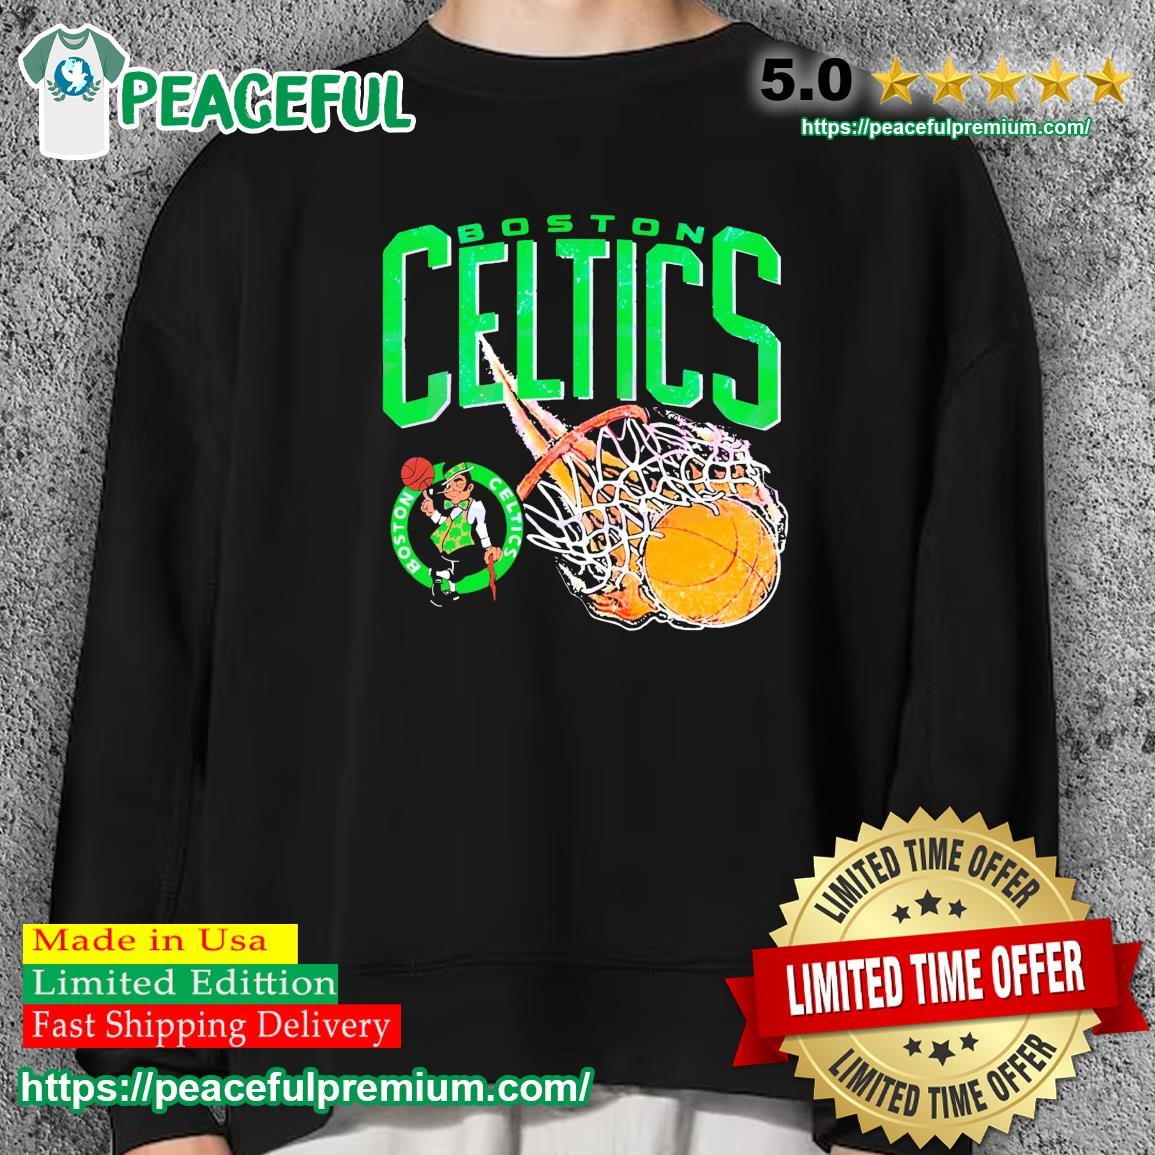 vintage celtics sweatshirt